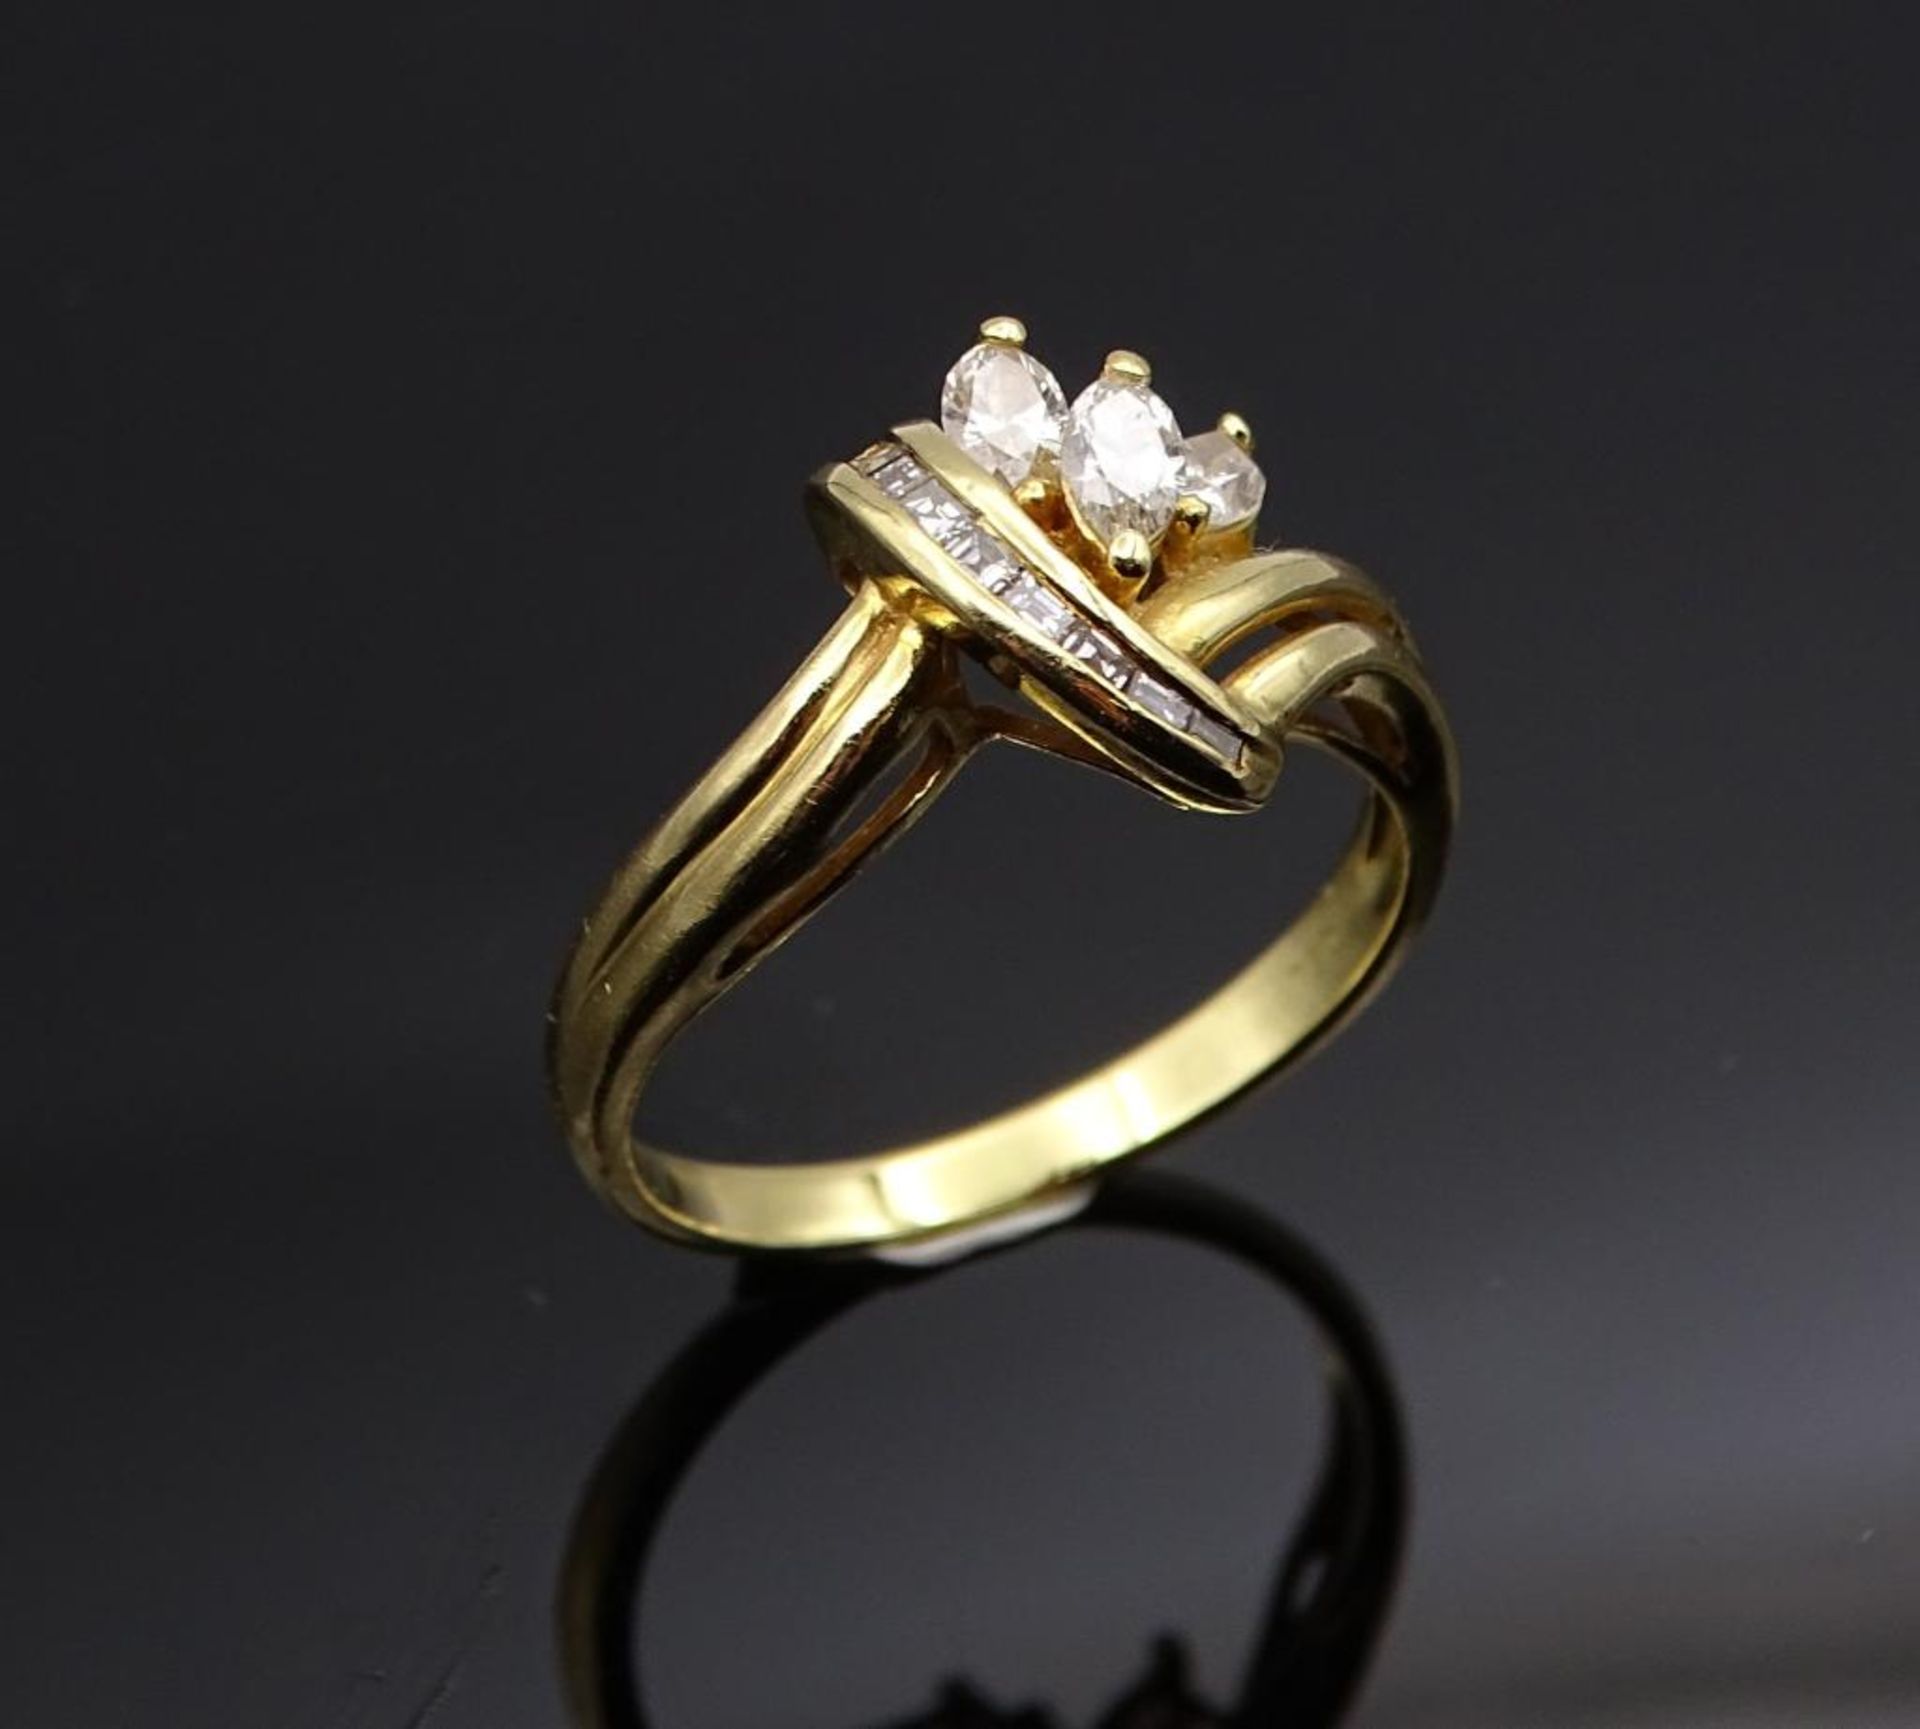 Diamant-Goldring in 750er Gelbgold, 3 Navette Diamanten W/si 1 zus. 0,39ct., + 8 Rohdiamanten W/si 1 - Bild 6 aus 7